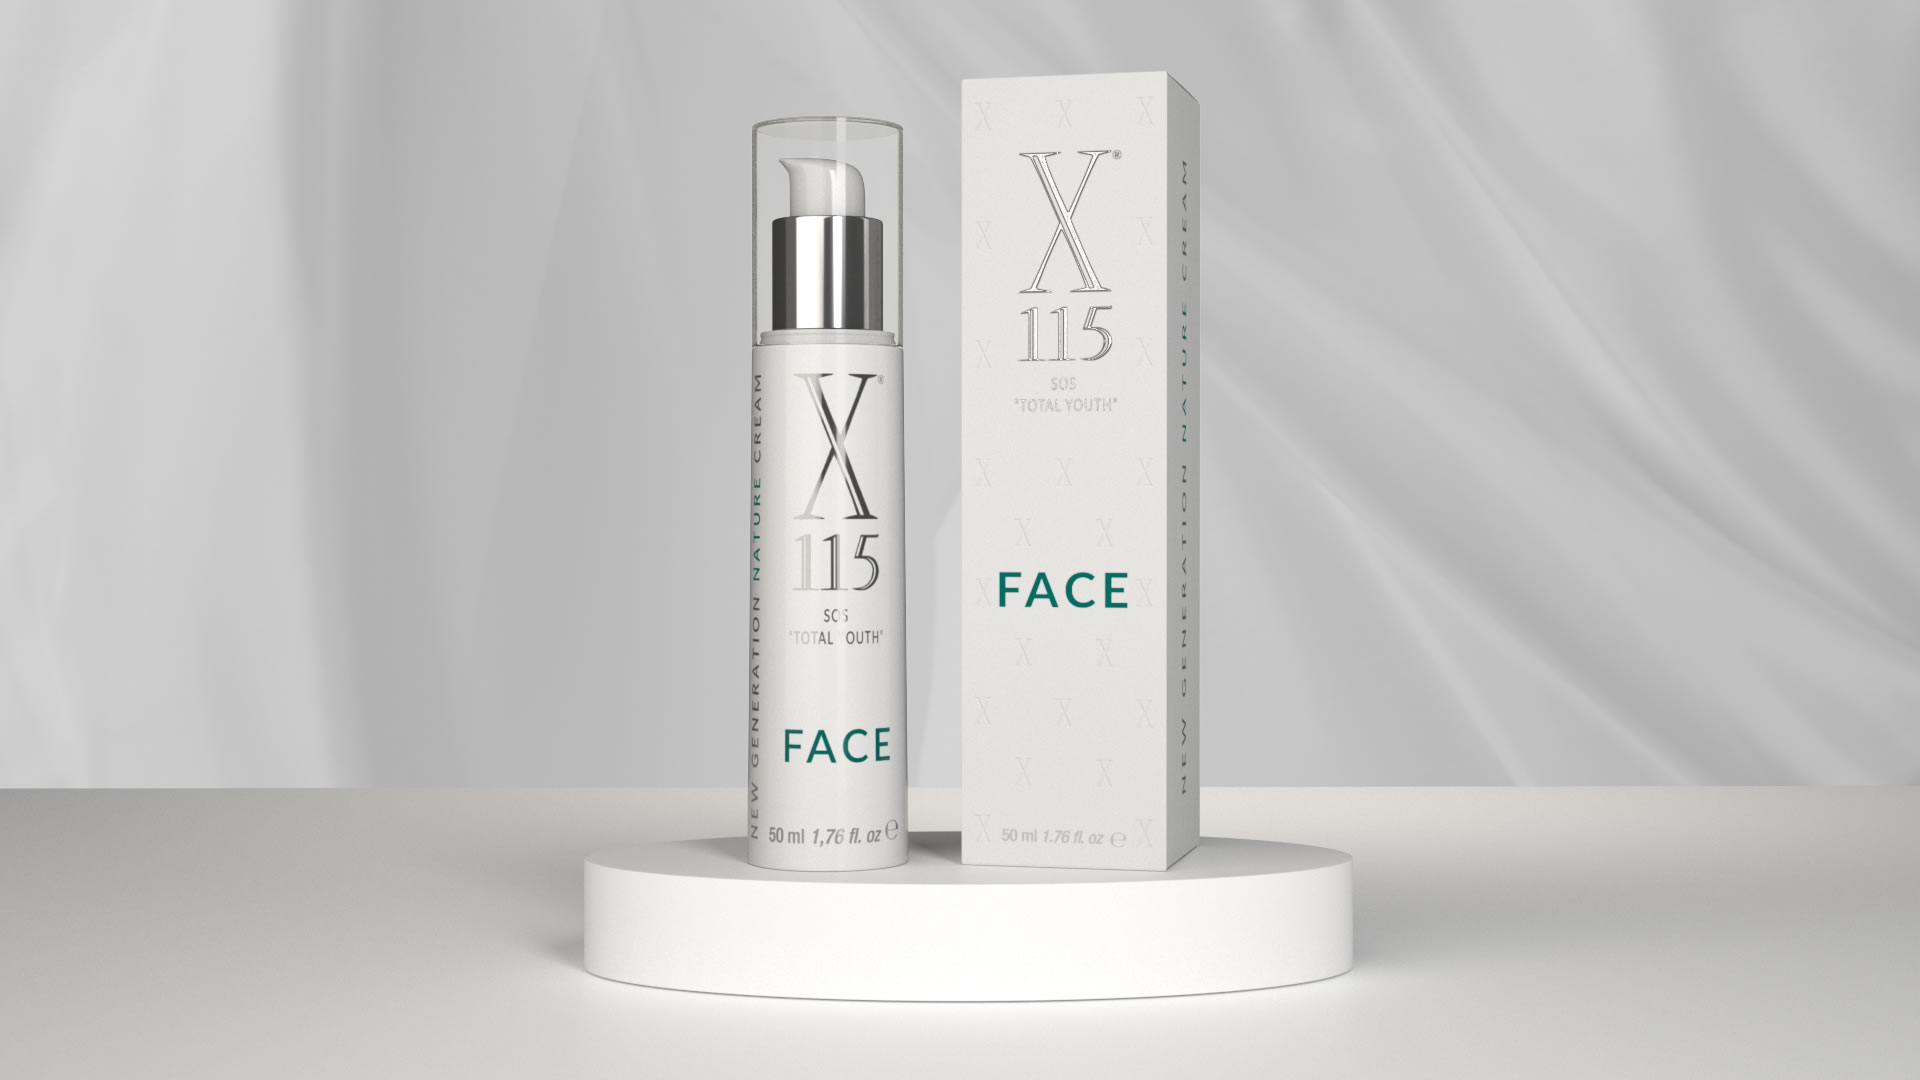 X115 Face - Crema Viso Antirughe